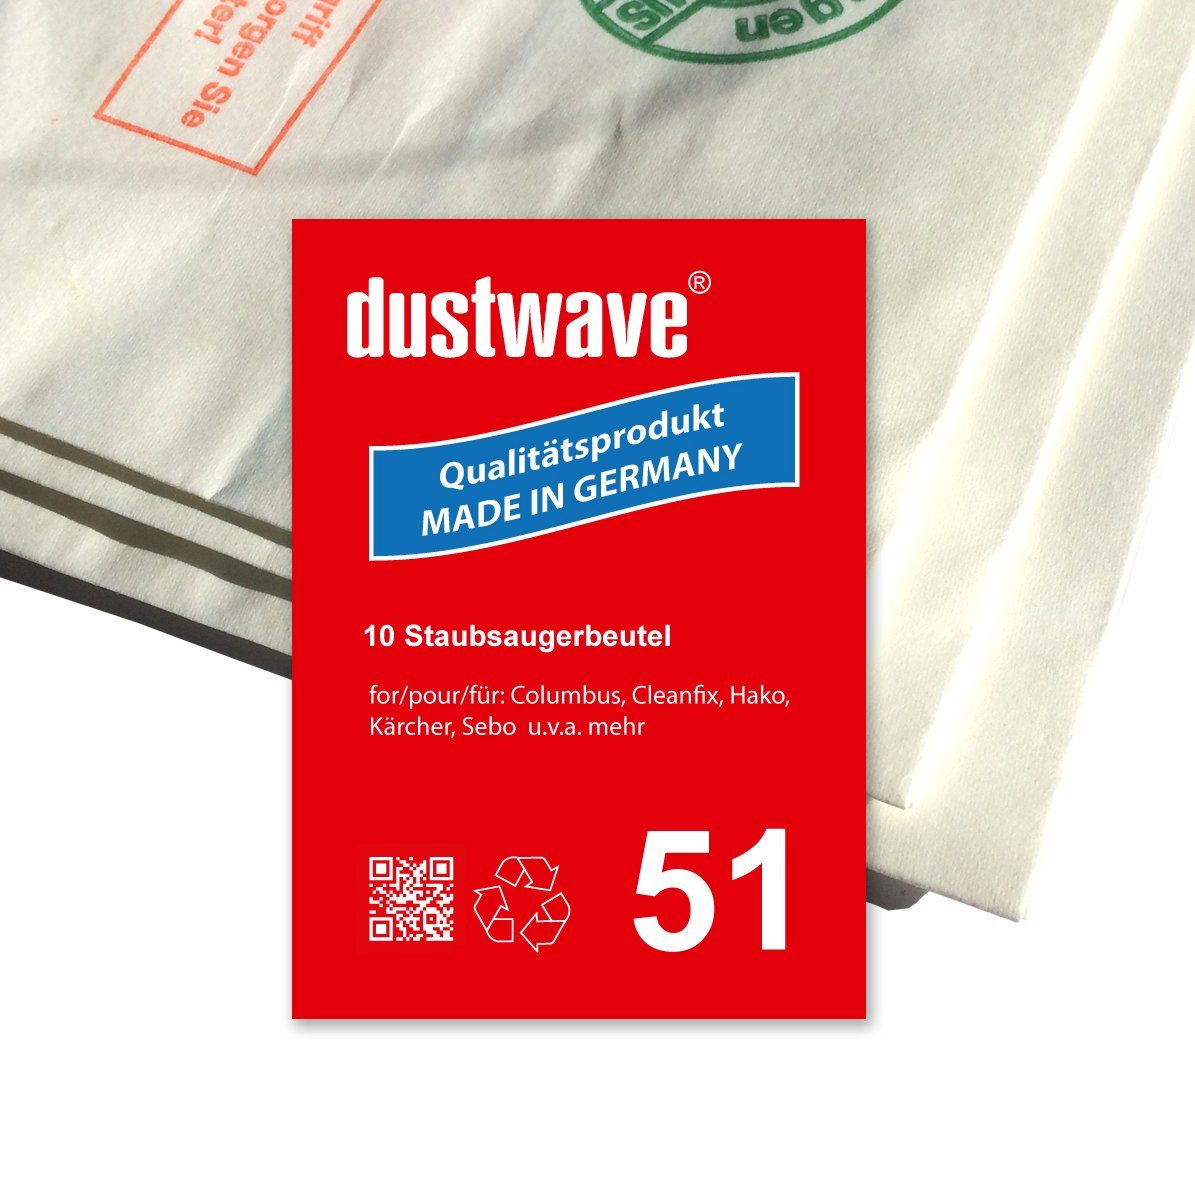 Dustwave Staubsaugerbeutel Sparpack, passend für Columbus 202 084 30 / 20208430, 5 St., Sparpack, 5 Staubsaugerbeutel + 1 Hepa-Filter (ca. 15x15cm - zuschneidbar)